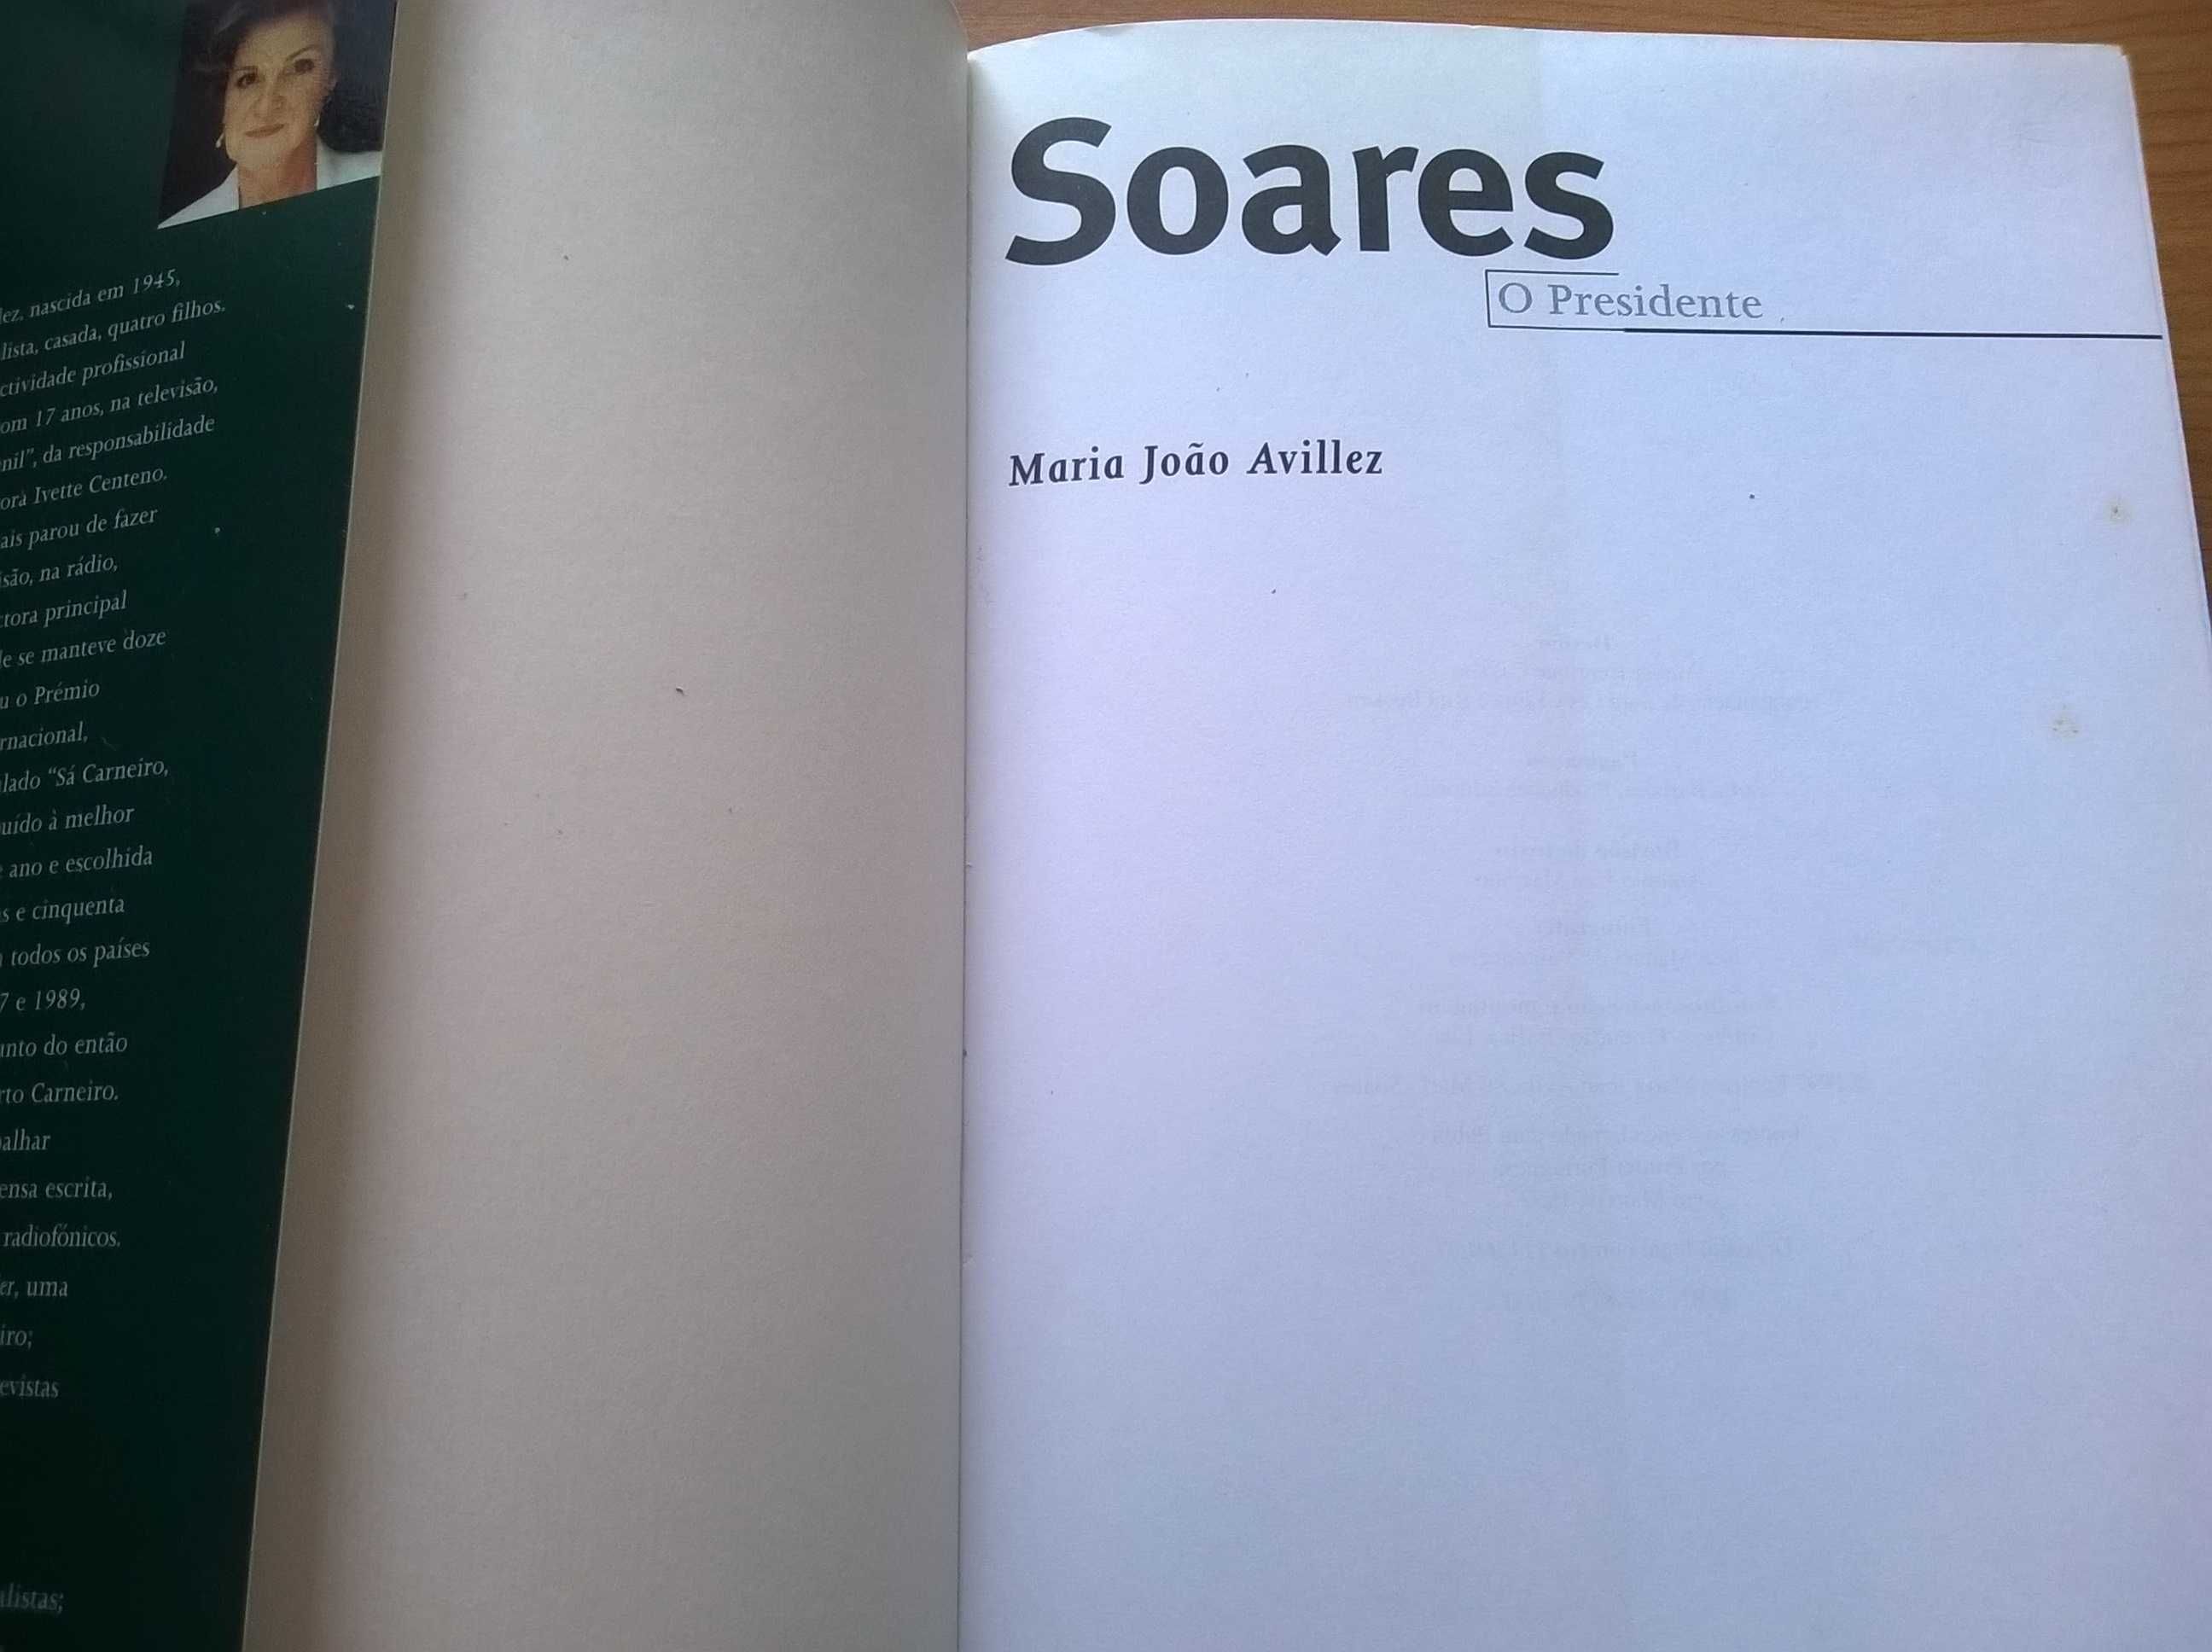 Soares, O Presidente - Maria João Avilez (portes grátis)